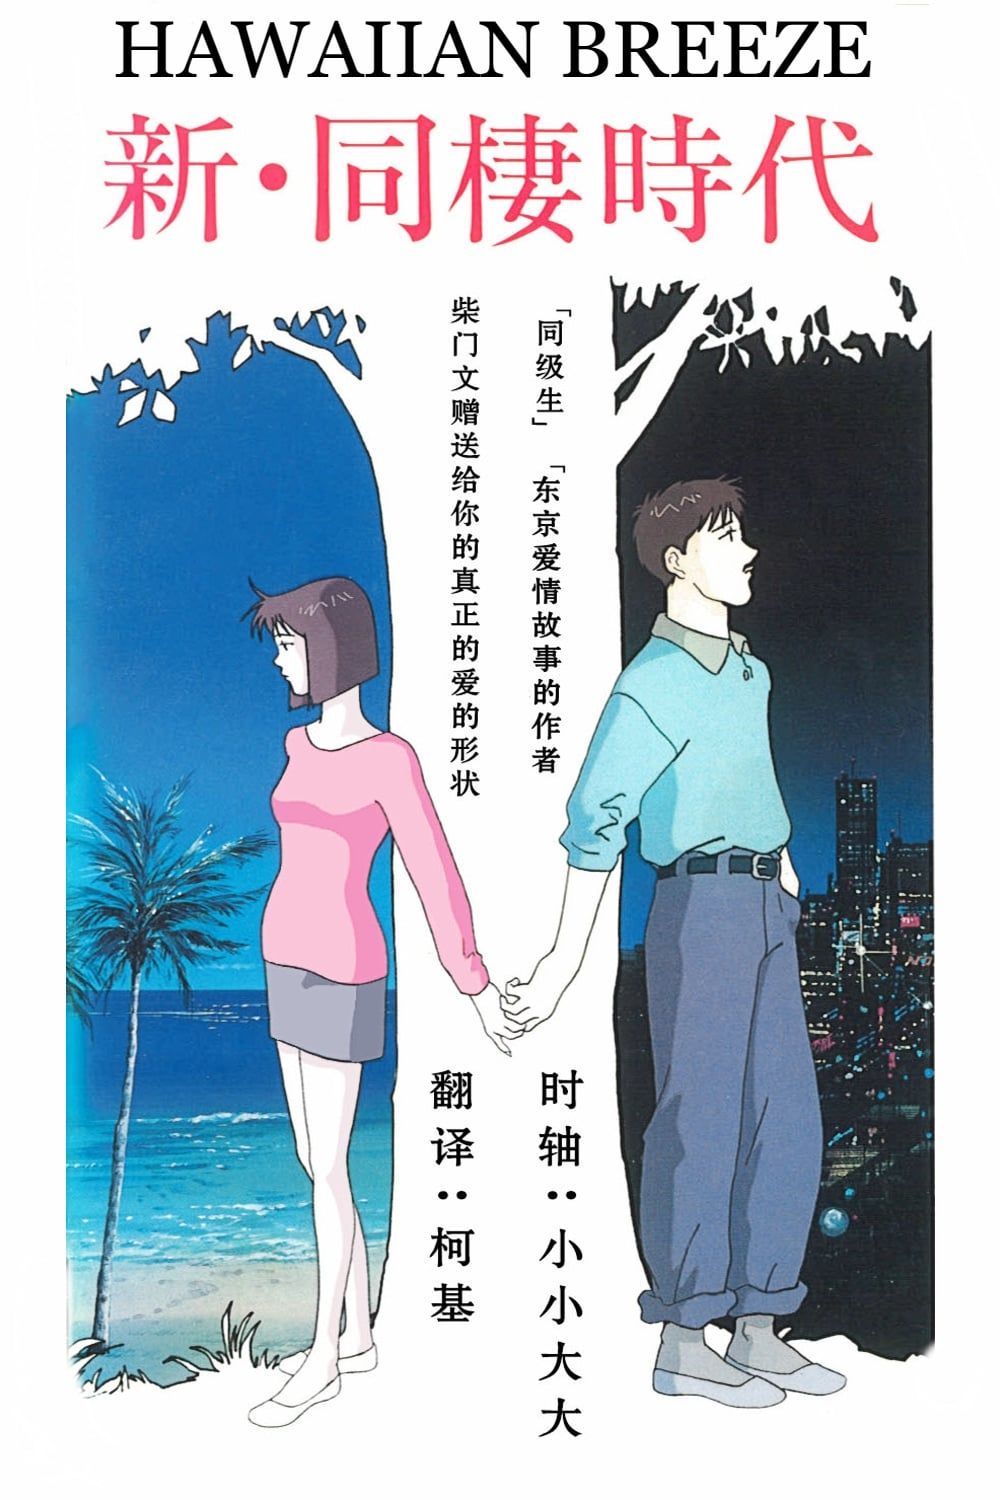 Shin Dousei Jidai: Hawaiian Breeze (OVA) (Sub) Full DVD